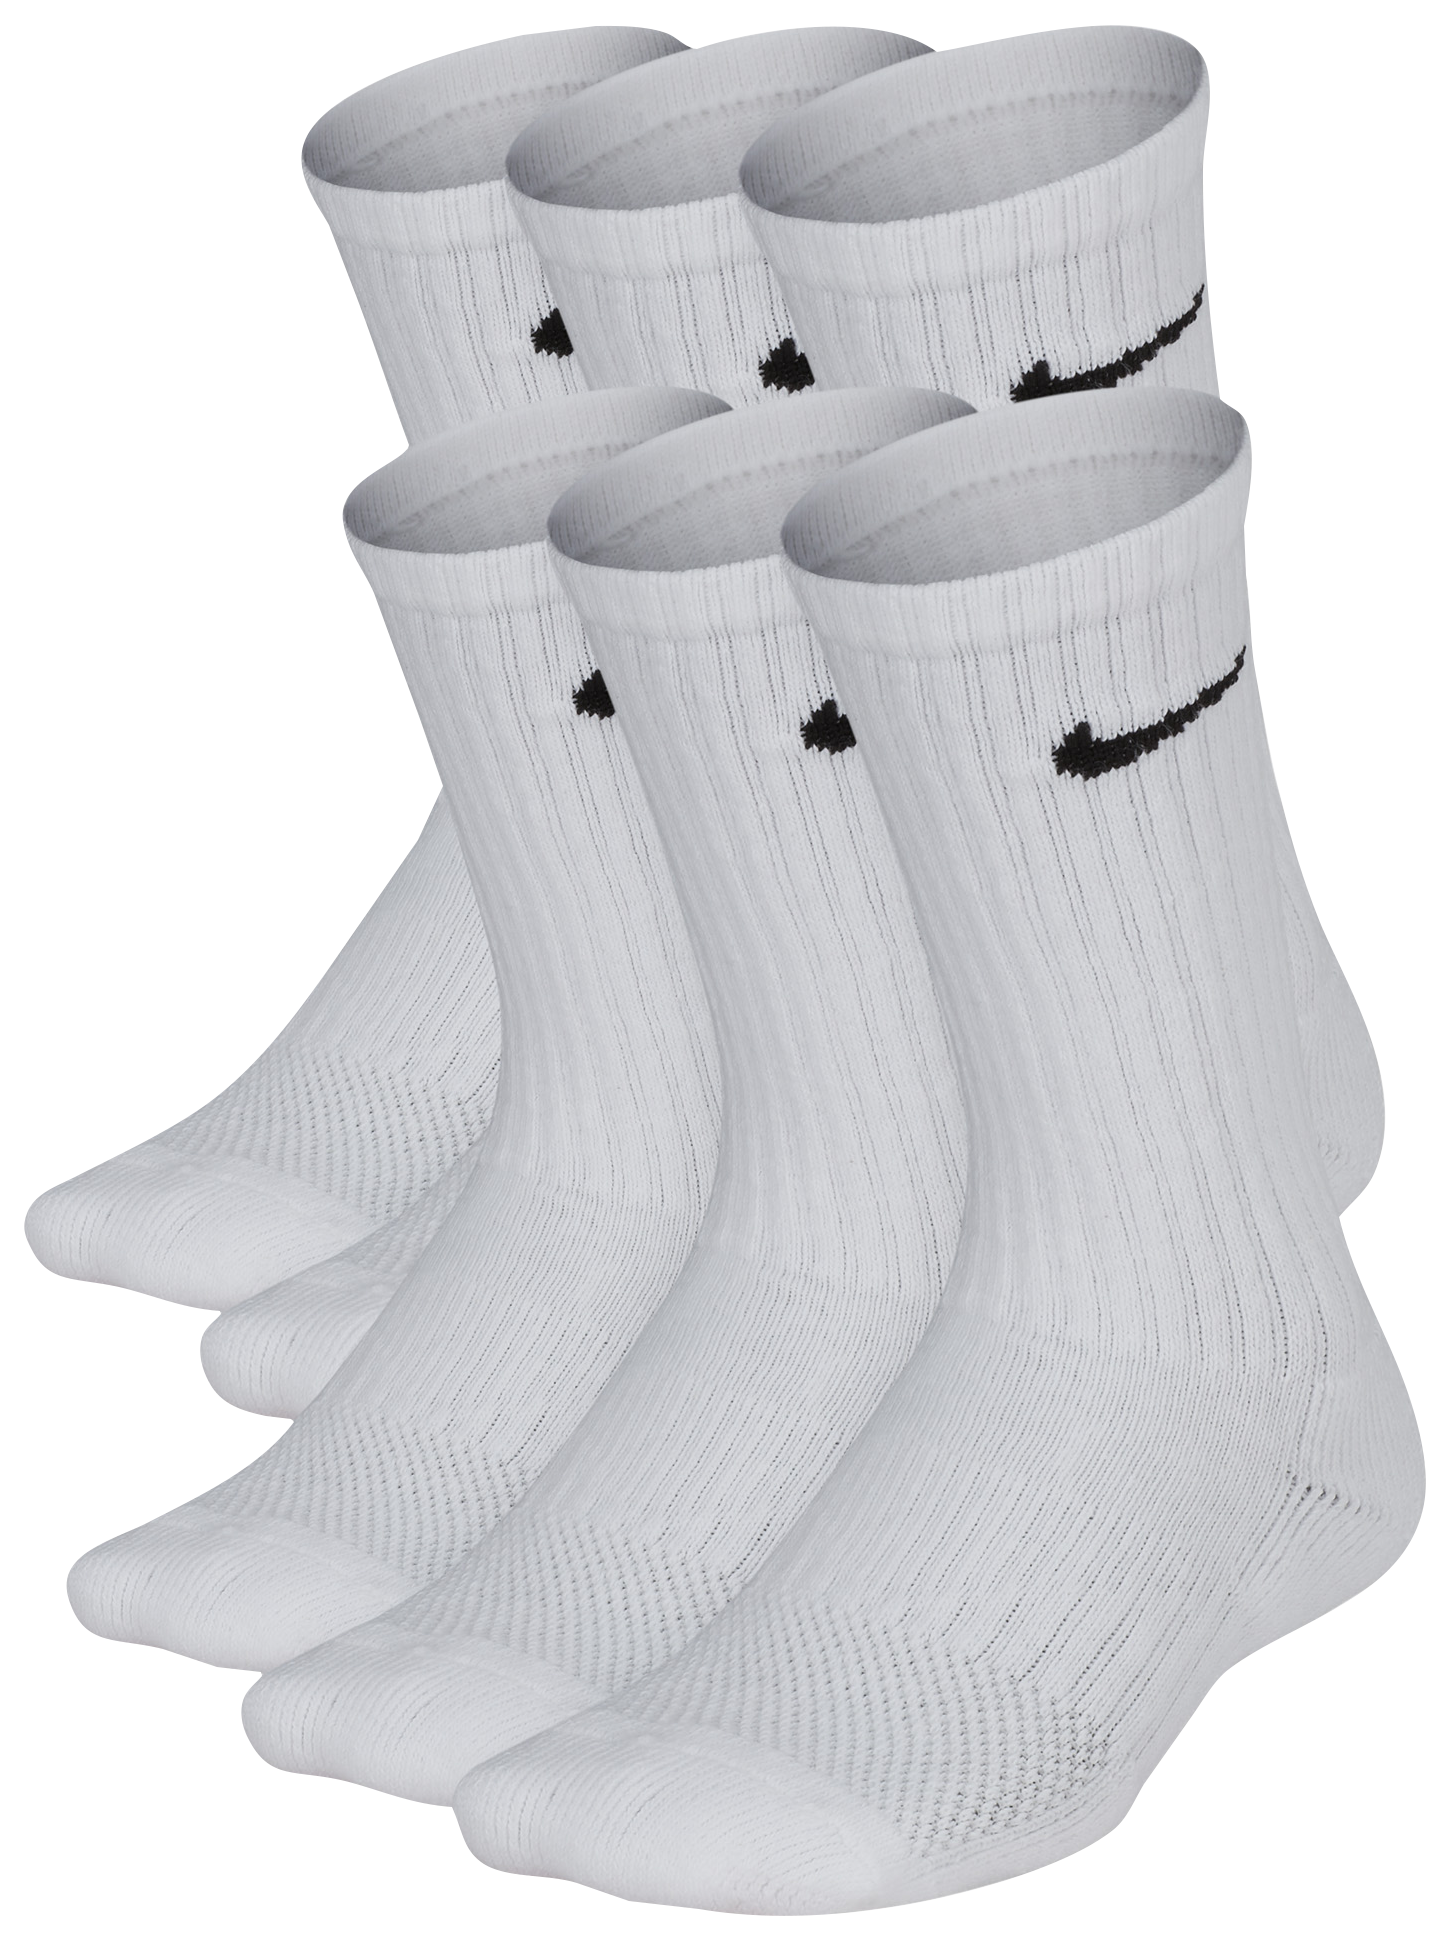 nike socks men white